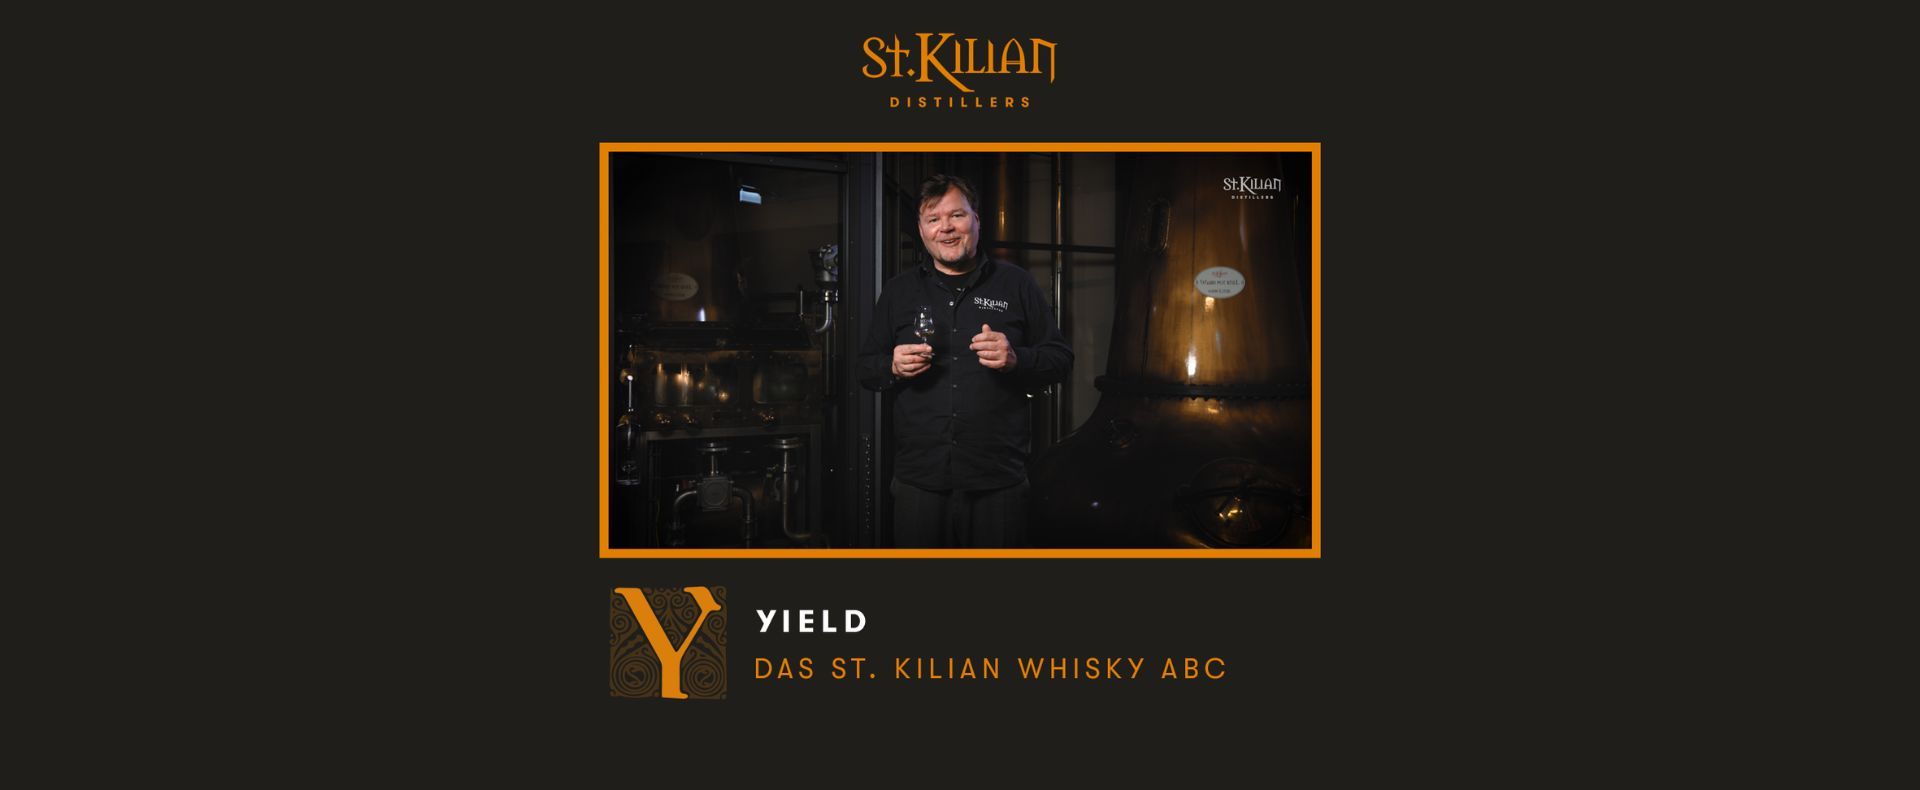 St. Kilian Whisky ABC - Y wie Yield